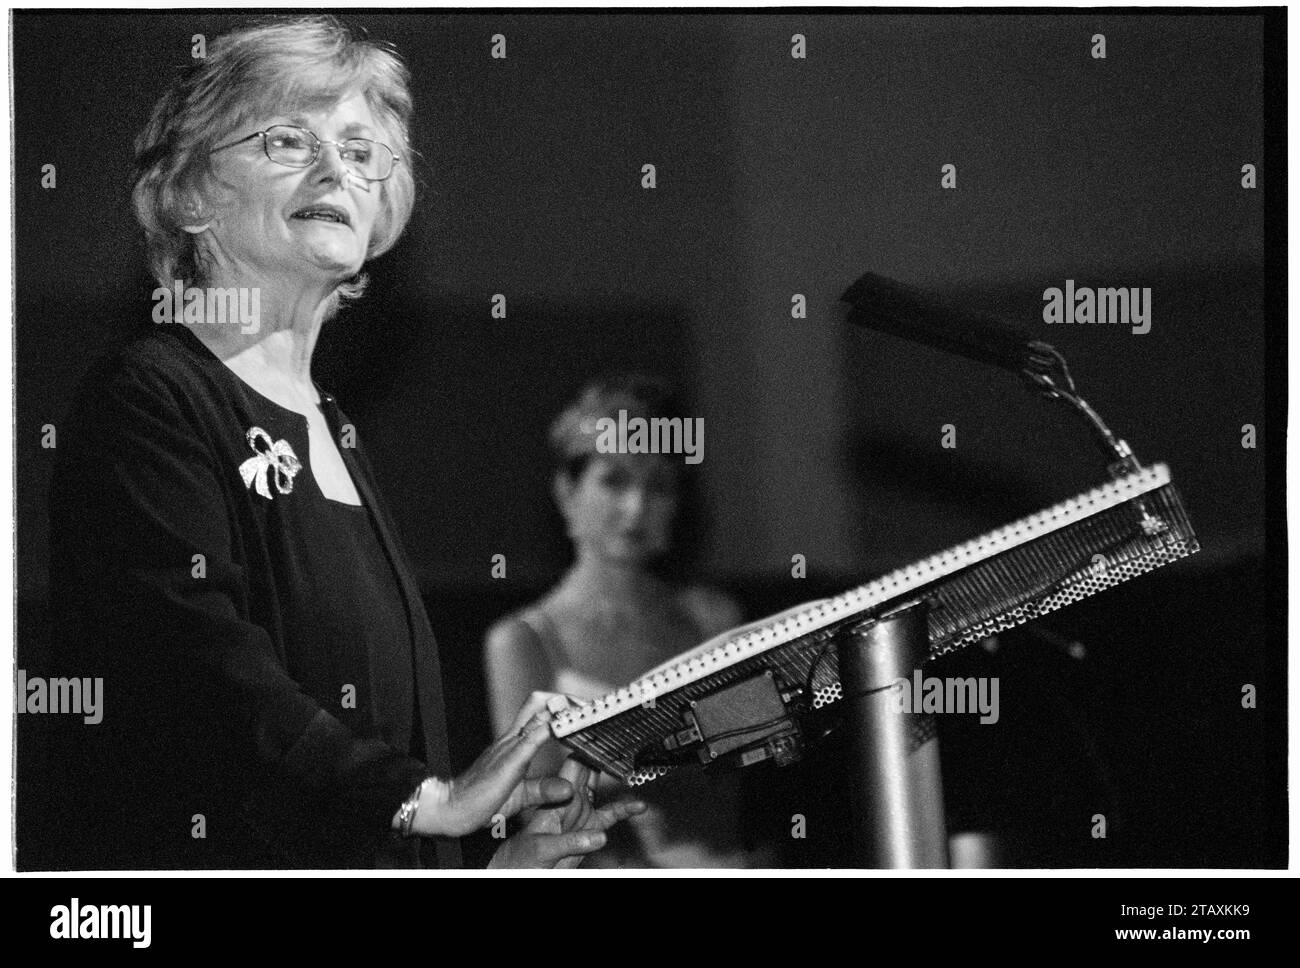 GLENYS KINNOCK, CARDIFF, 2001: Glenys Kinnock (1944-2023) presenta un premio alla cerimonia di premiazione Welsh Woman of the Year 2001 e Gala Dinner Ball il 23 novembre 2001 alla Cardiff International Arena (CIA), Galles, Cardiff. All'epoca Glenys Kinnock era membro del Parlamento europeo. Foto: Rob Watkins Foto Stock